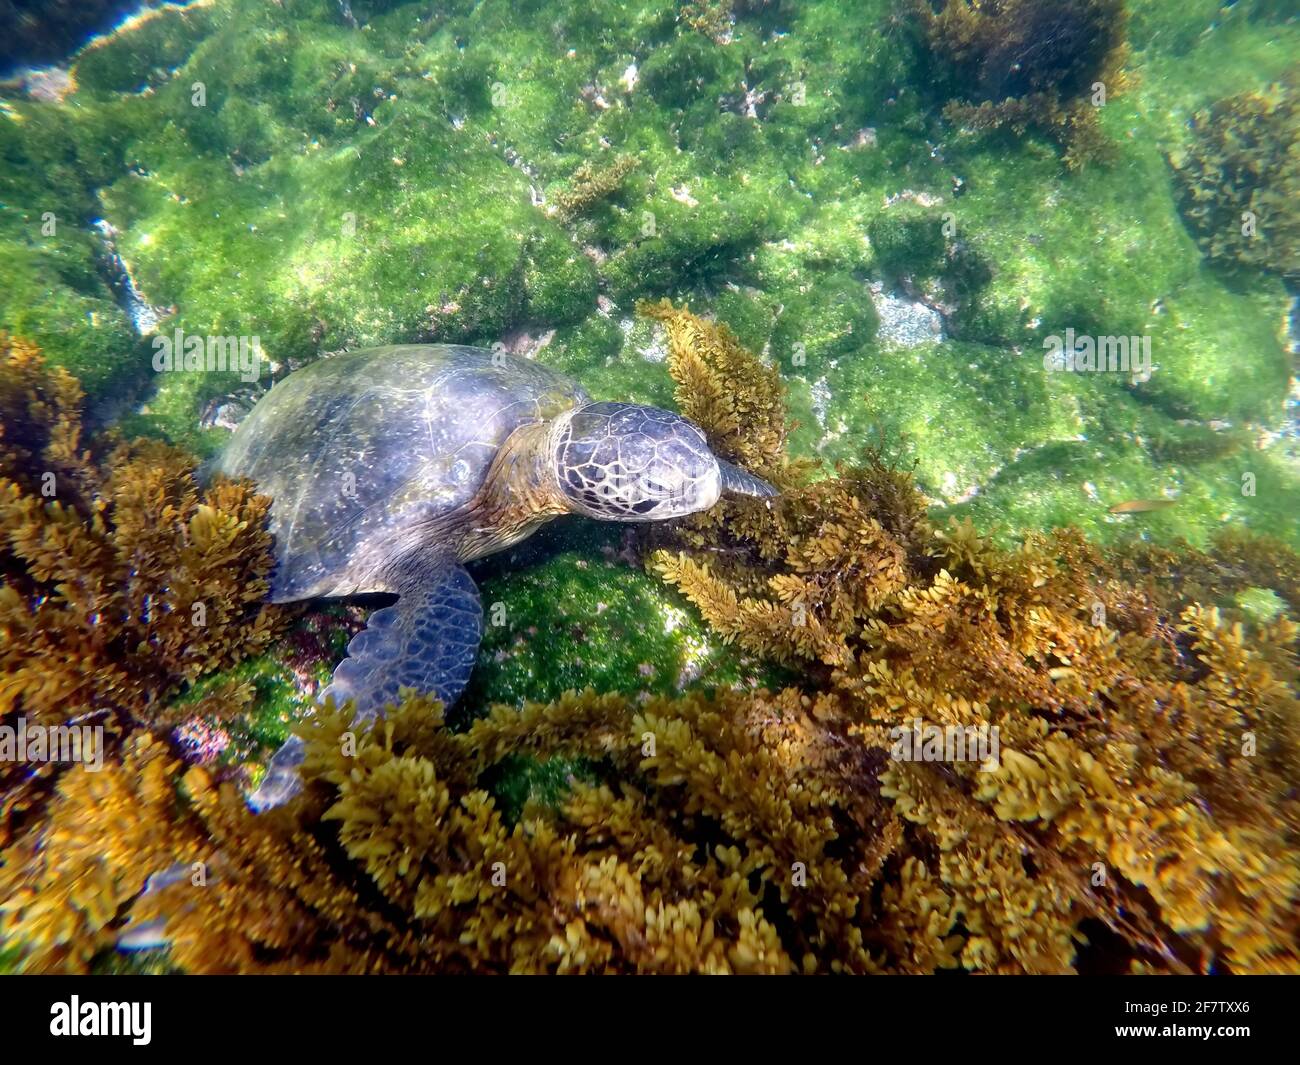 Galapagos green turtle at Punta Espinoza, Fernandina Island, Galapagos, Ecuador Stock Photo